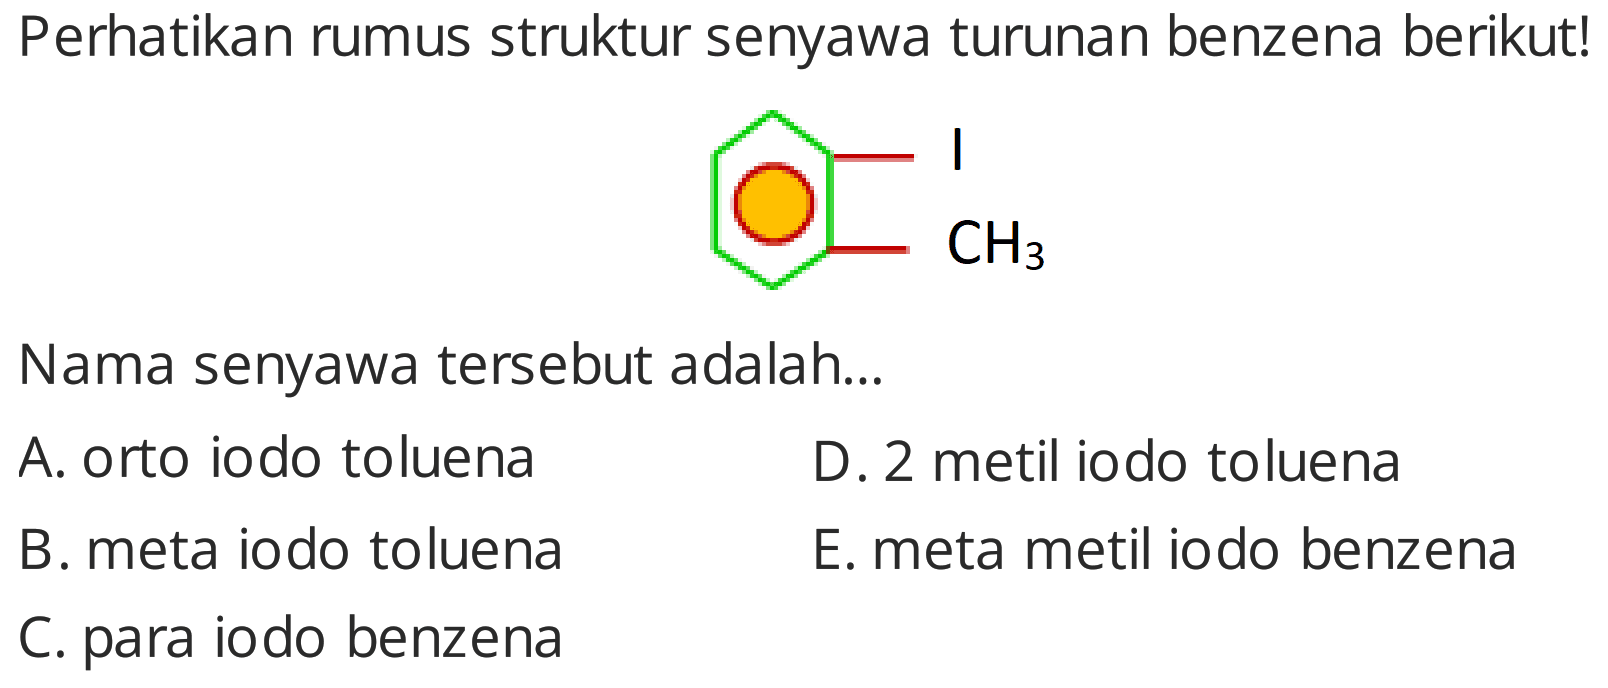 Perhatikan rumus struktur senyawa turunan benzena berikut!
Cc1ccccc1I
Nama senyawa tersebut adalah...
A. orto iodo toluena
D. 2 metil iodo toluena
B. meta iodo toluena
E. meta metil iodo benzena
C. para iodo benzena